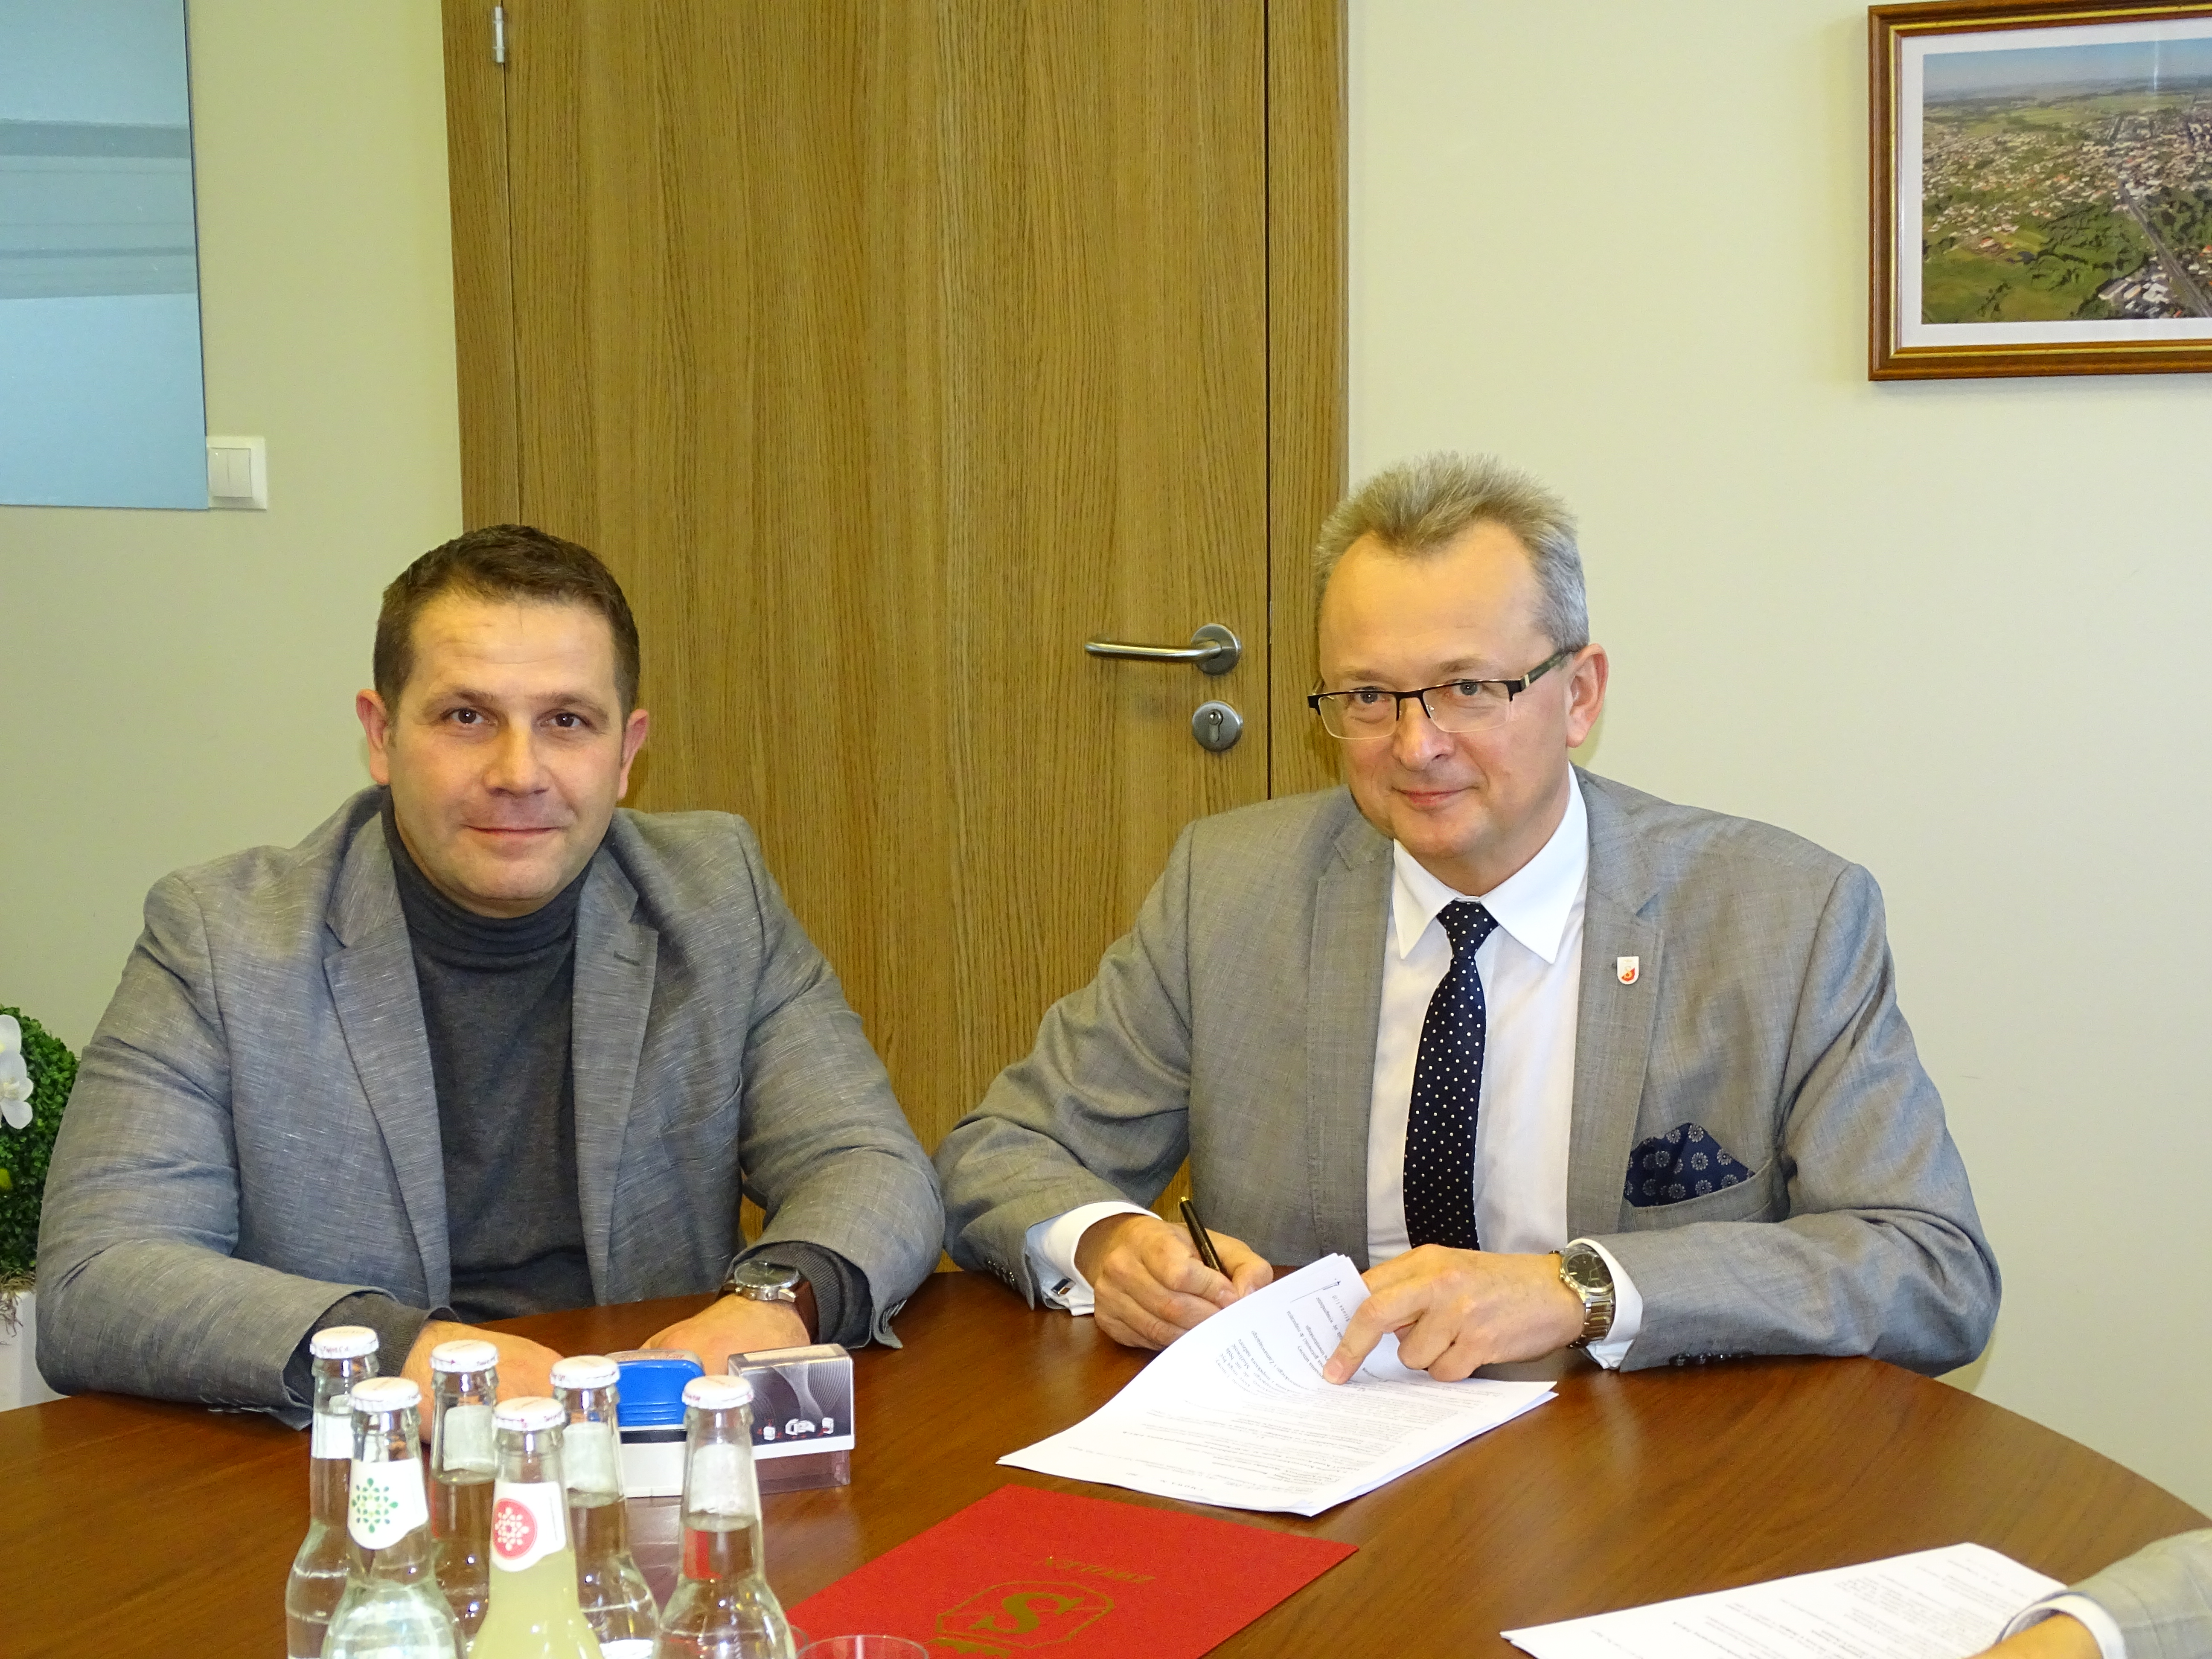 Burmistrz Zwolenia Arkadiusz Sulima (pierwszy z prawej) podpisujący umowę na przebudowę chodników. Na zdjęciu również z-ca burmistrza Grzegorz Molendowski.